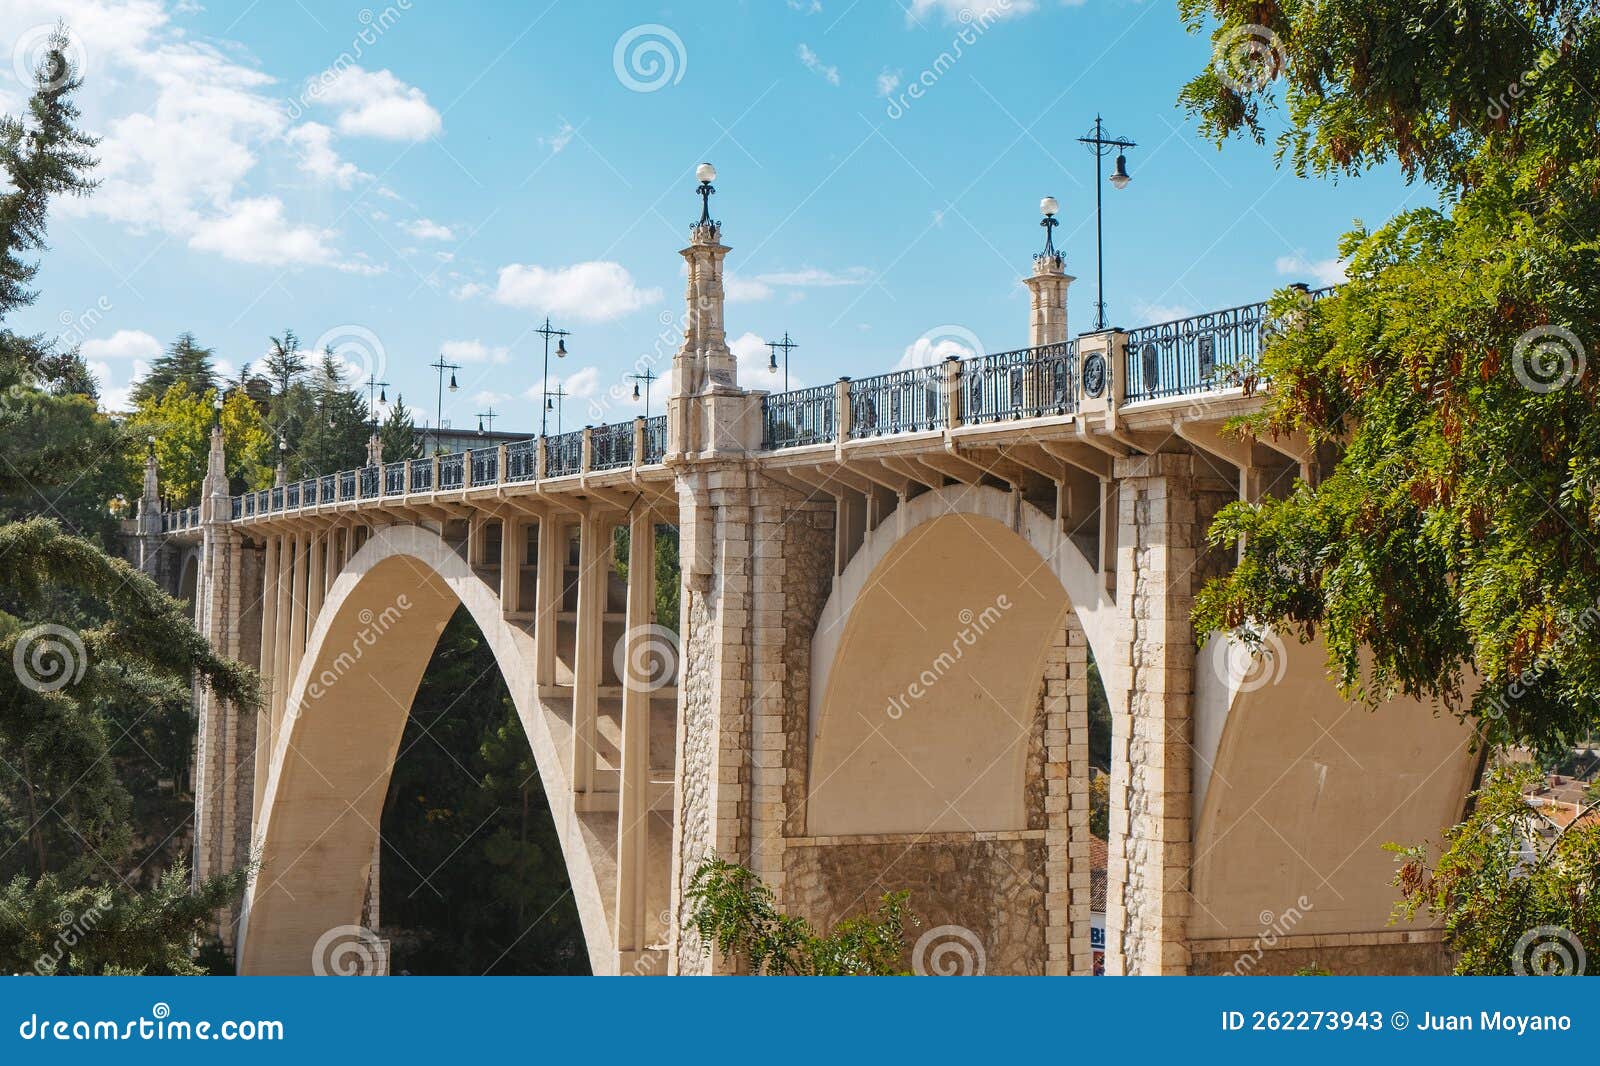 viaducto de fernando hue bridge, in teruel, spain